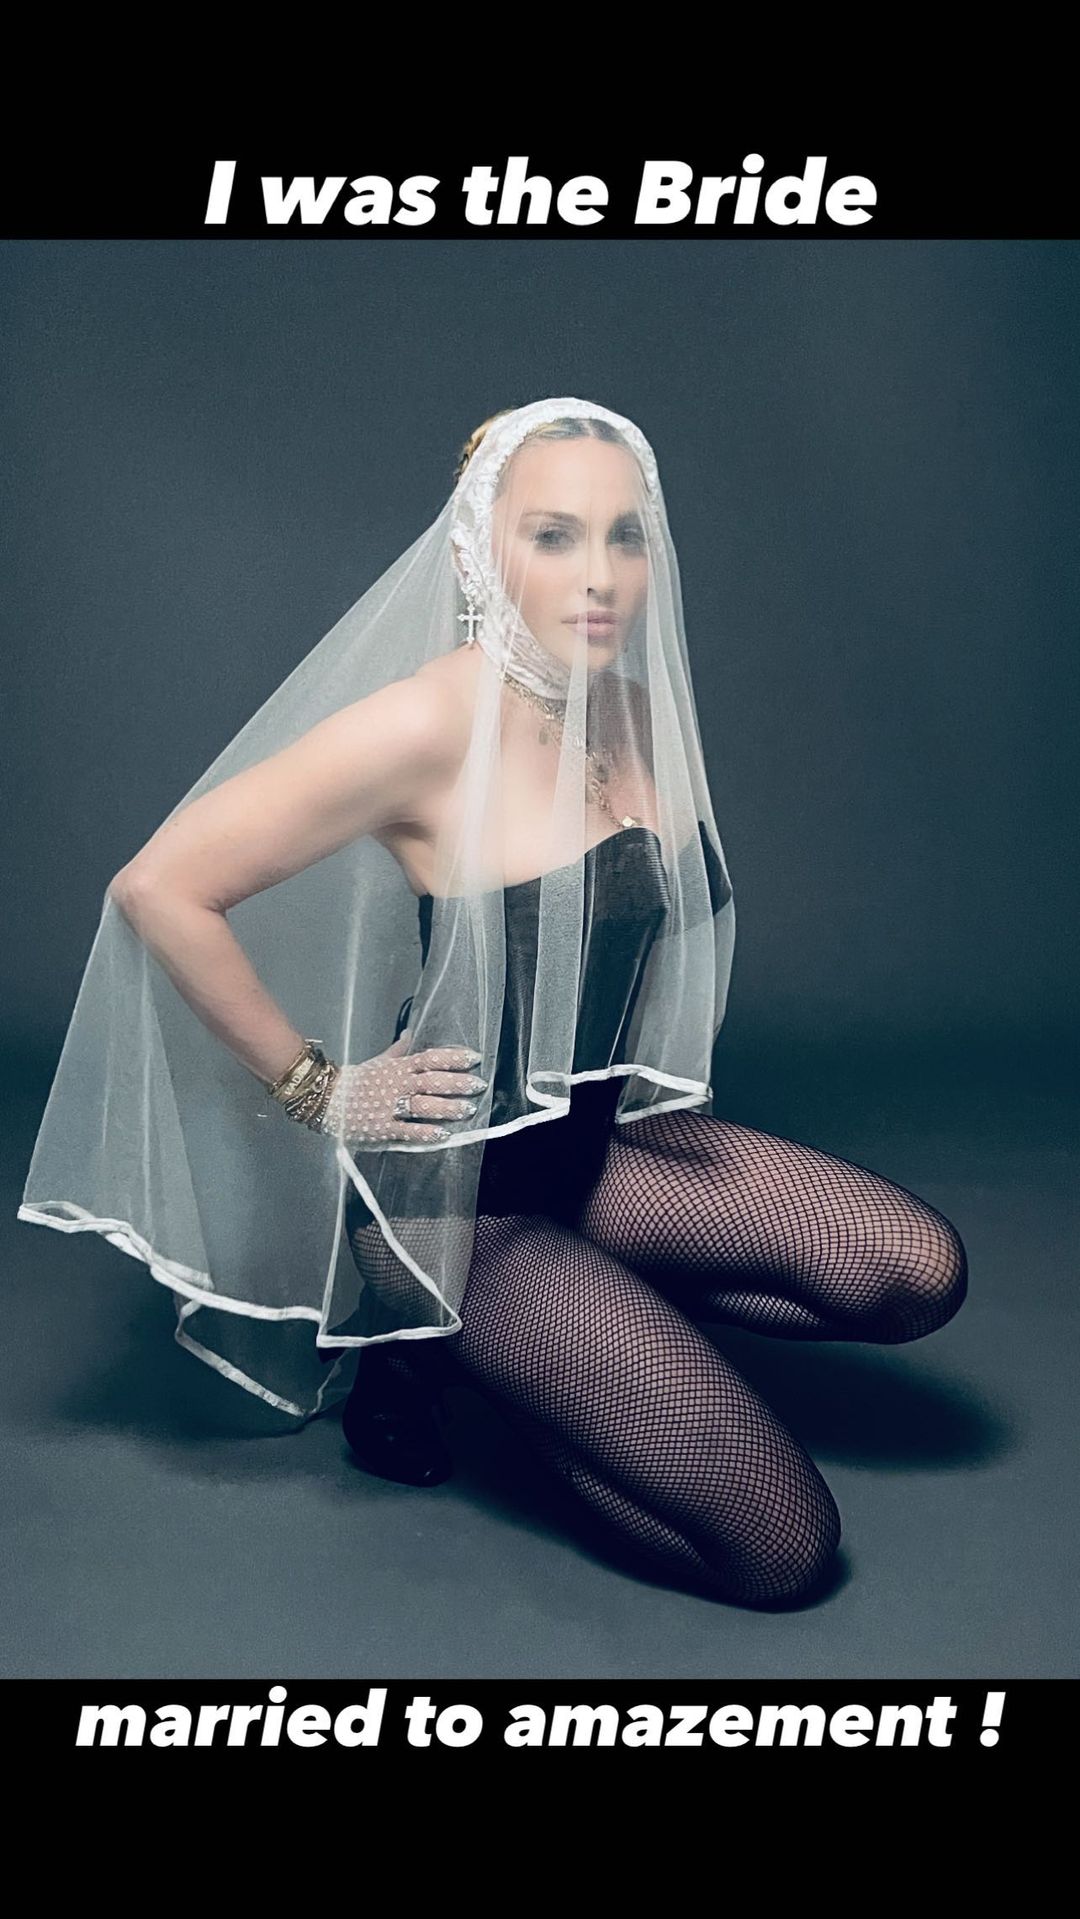 Fotos n°5 : Madonna es la novia!